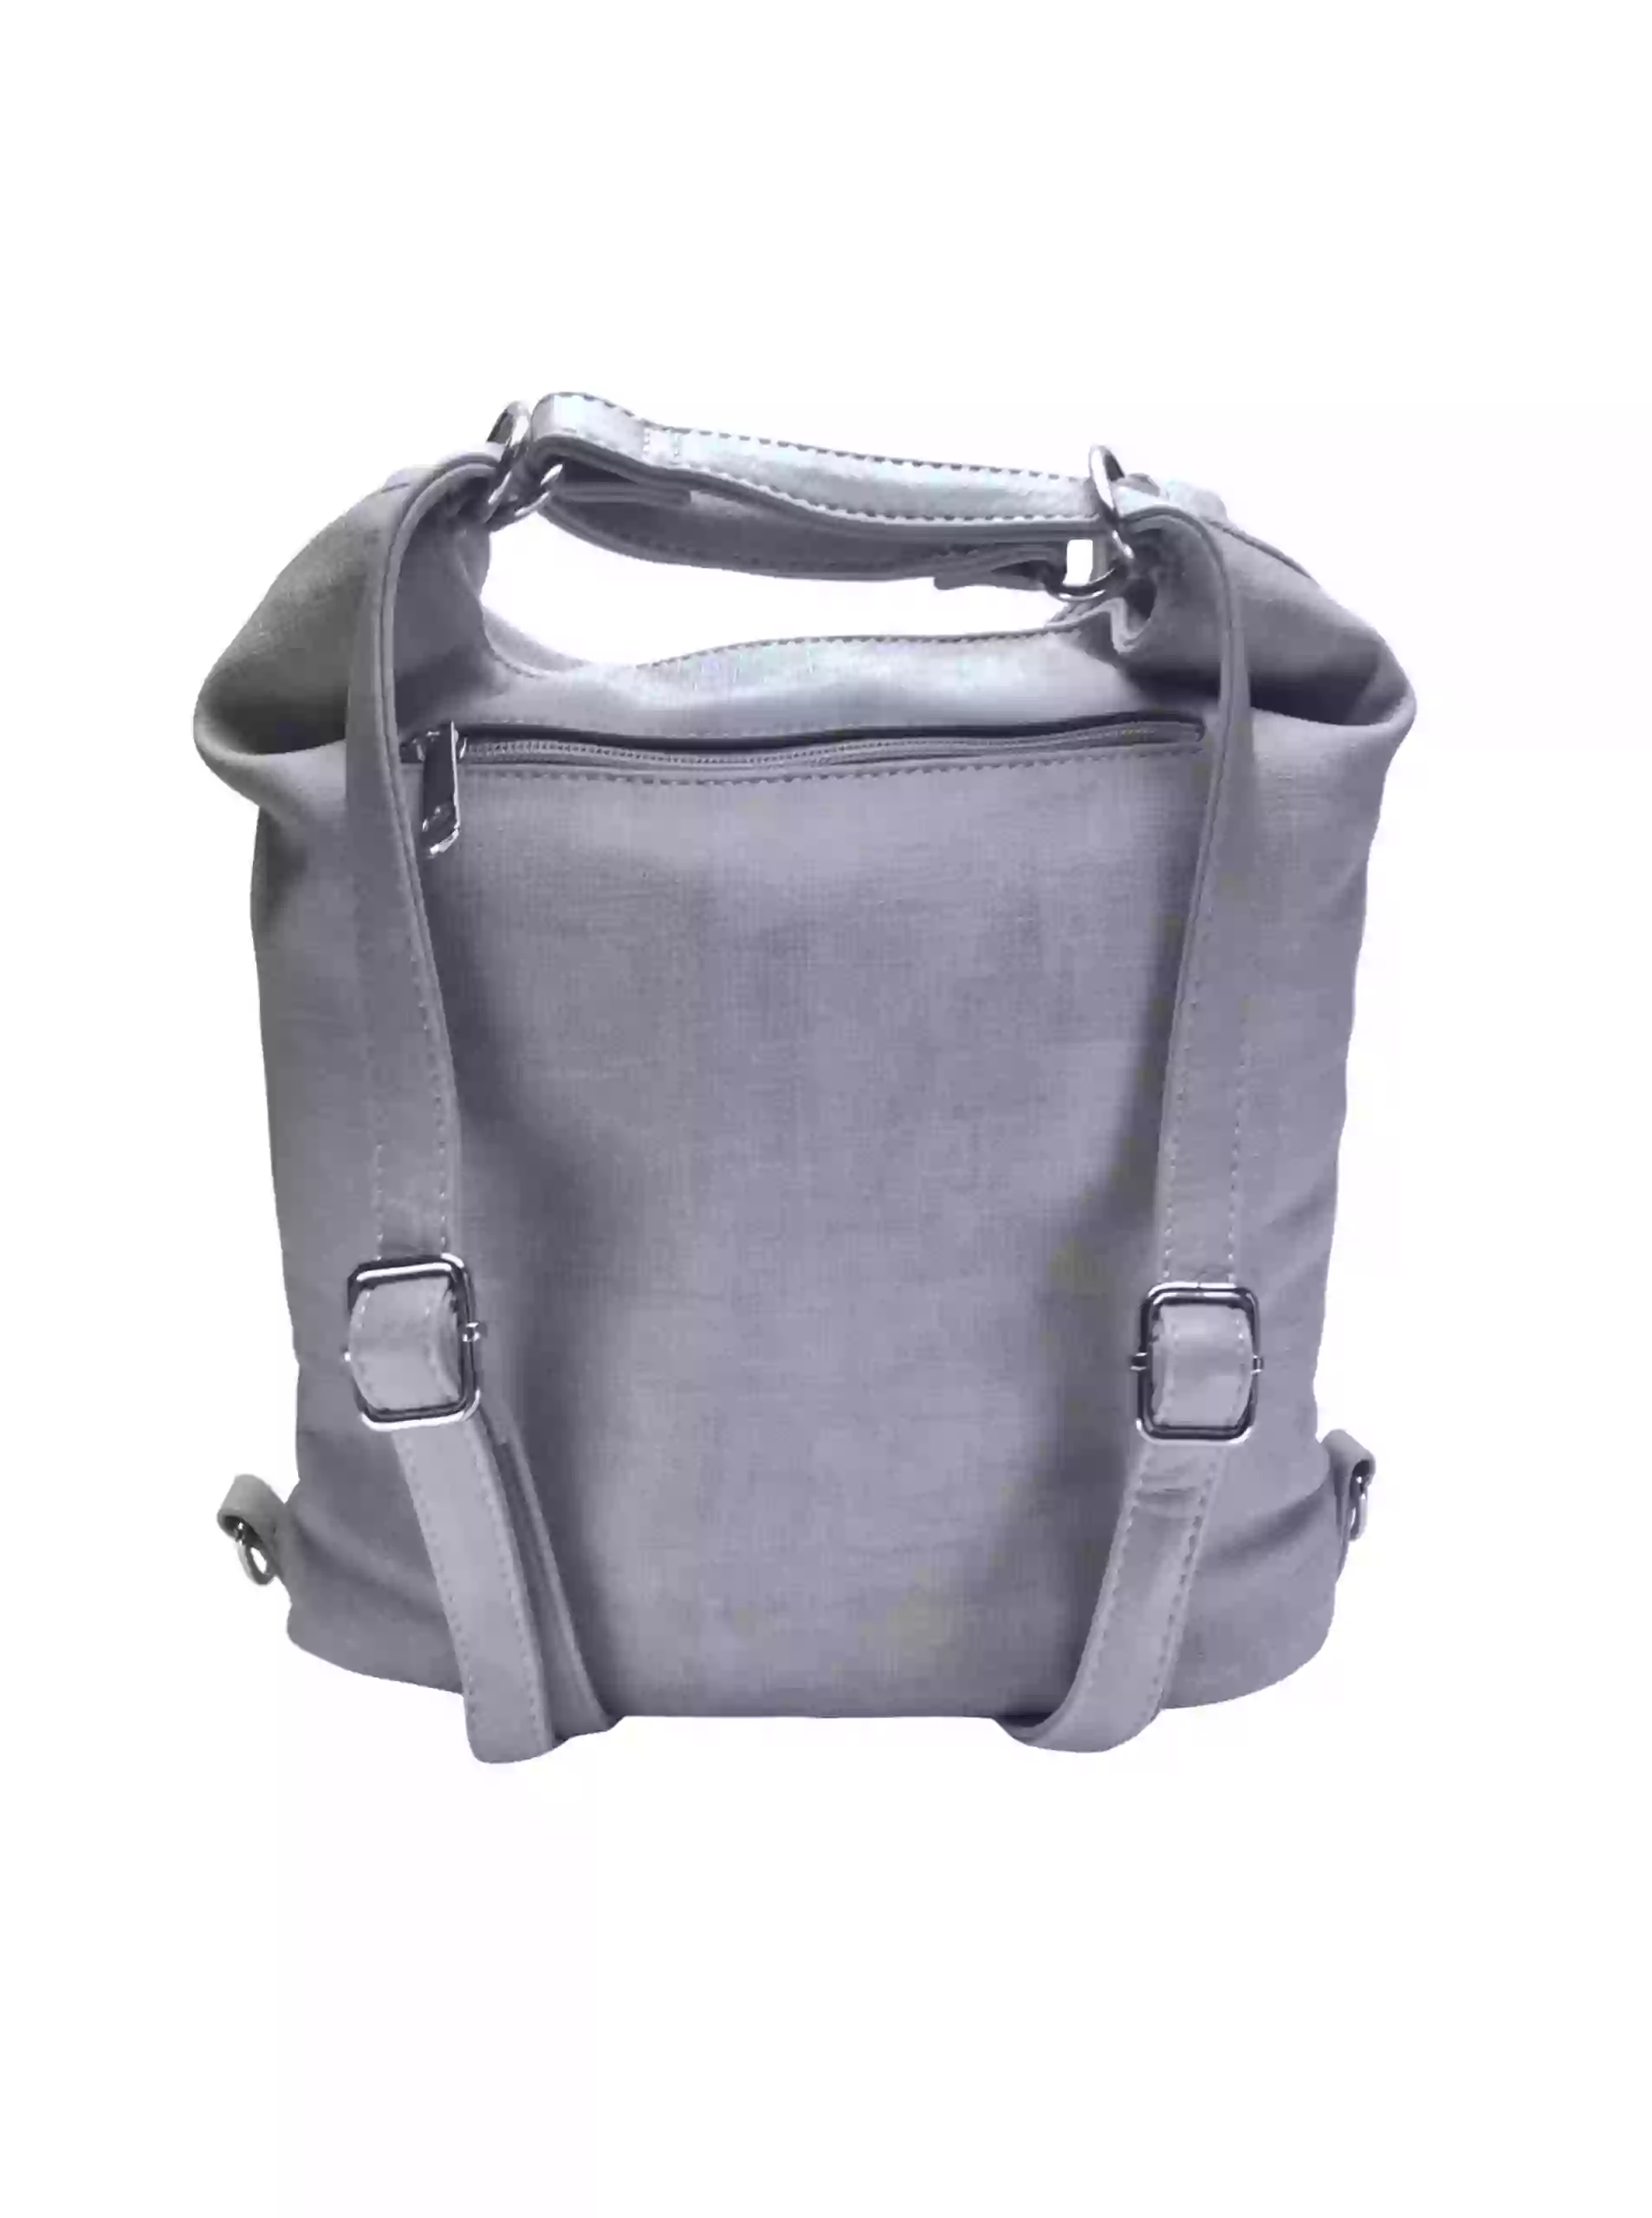 Střední světle šedý kabelko-batoh 2v1 s praktickou kapsou, Tapple, H190062, zadní strana kabelko-batohu 2v1 s popruhy